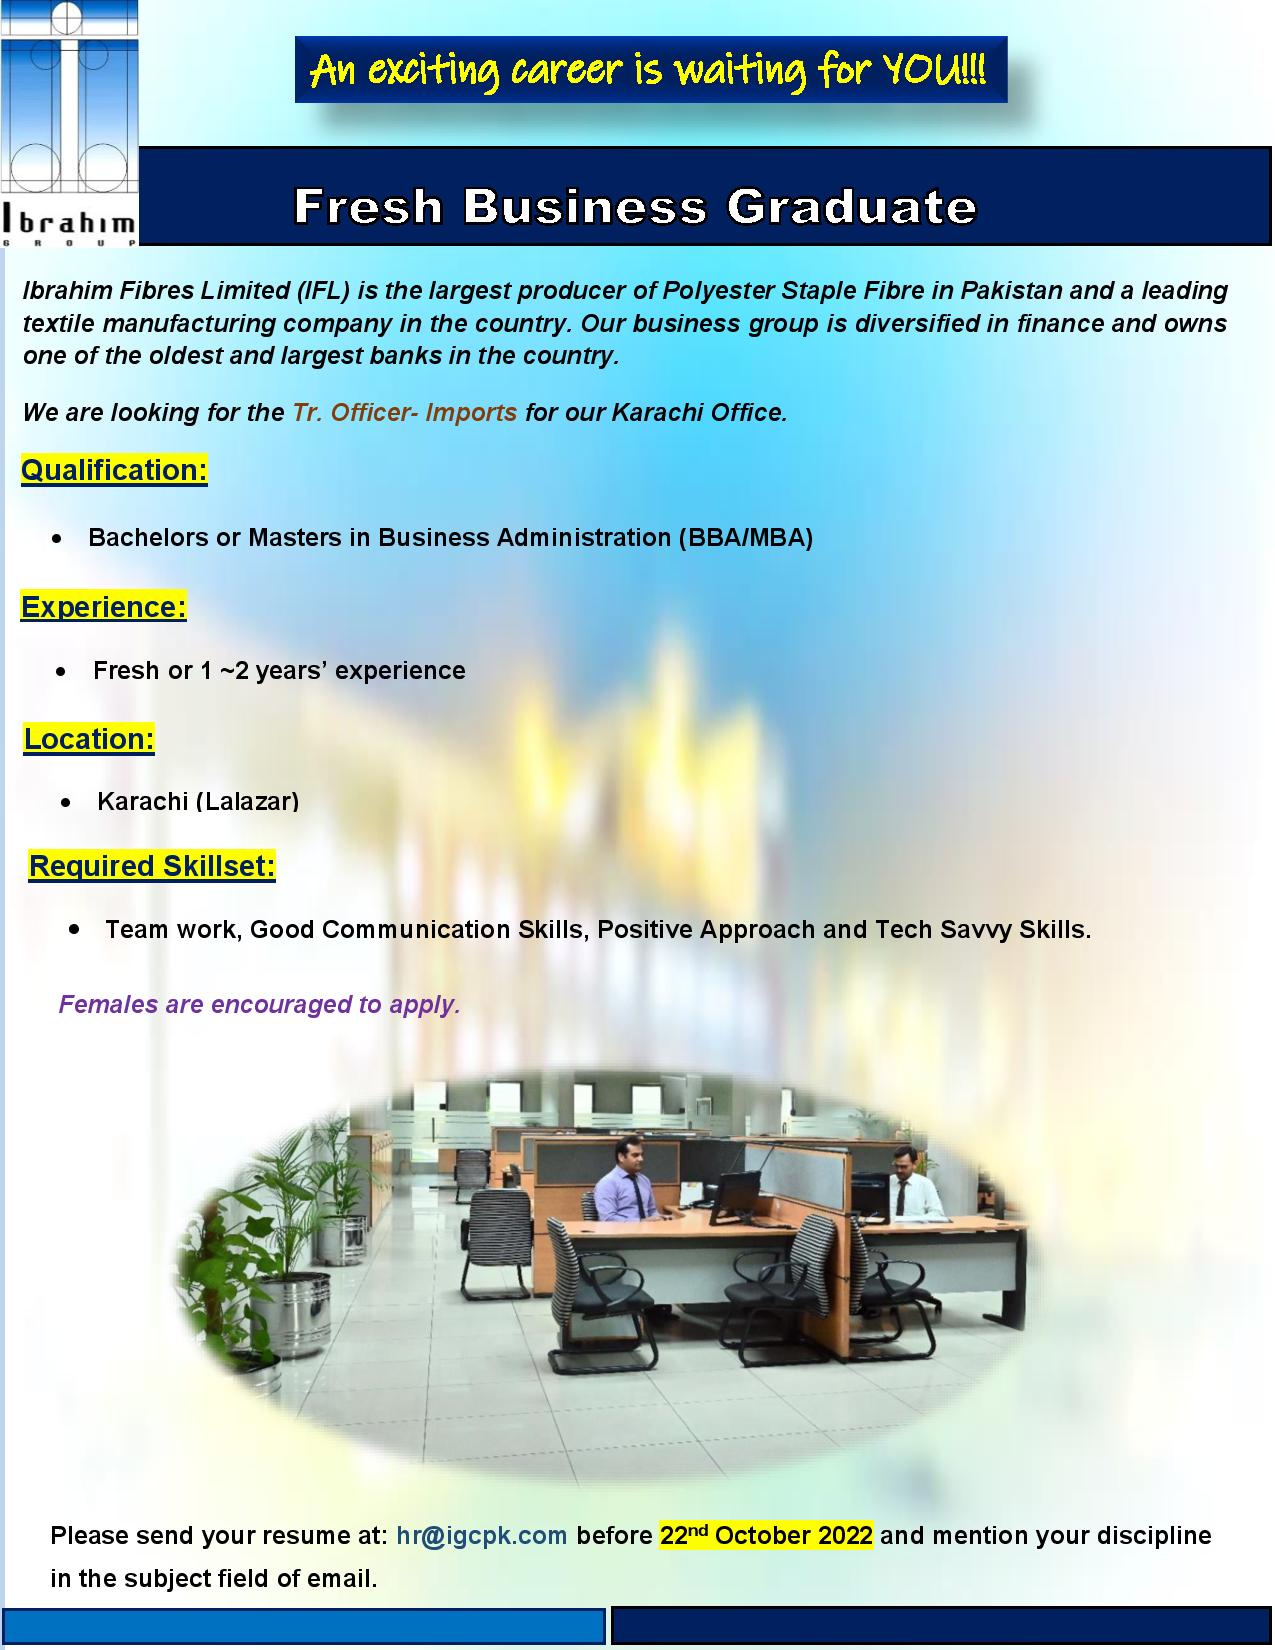 Ibrahim Fibres Ltd. Jobs For Fresh Business Graduate